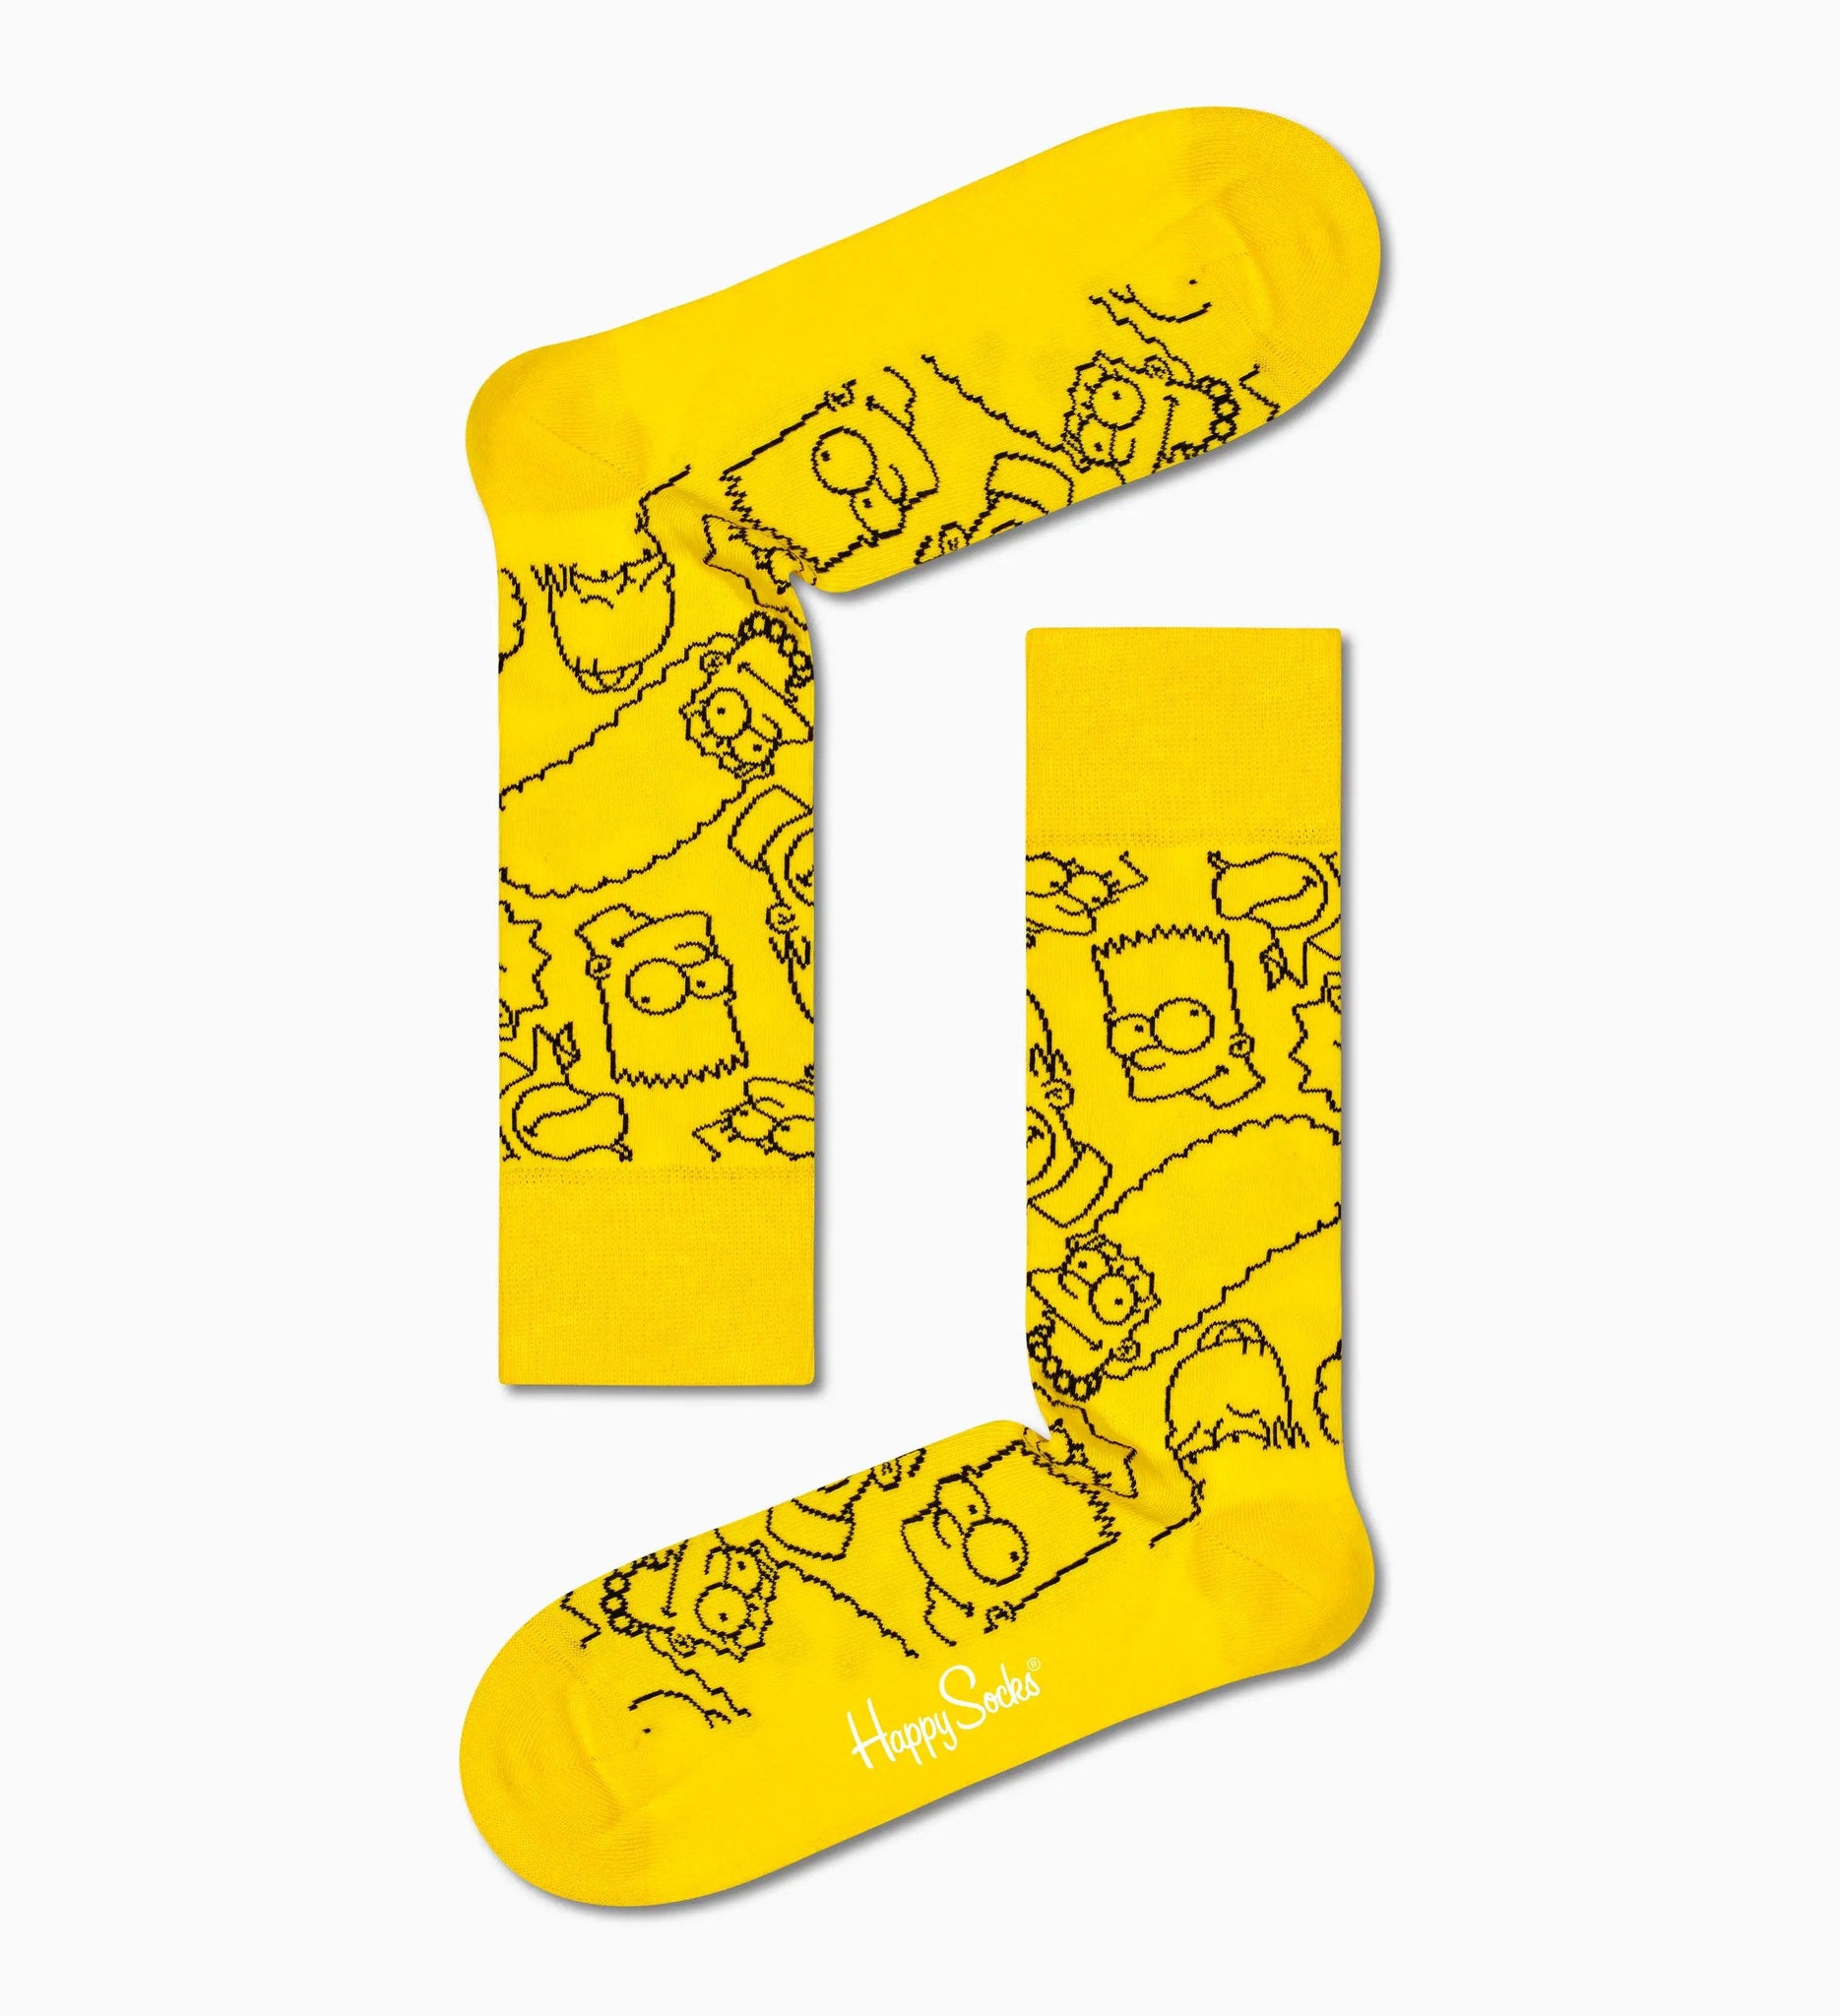 Pack de 4 Calcetines Happy Socks x The Simpsons - ECRU